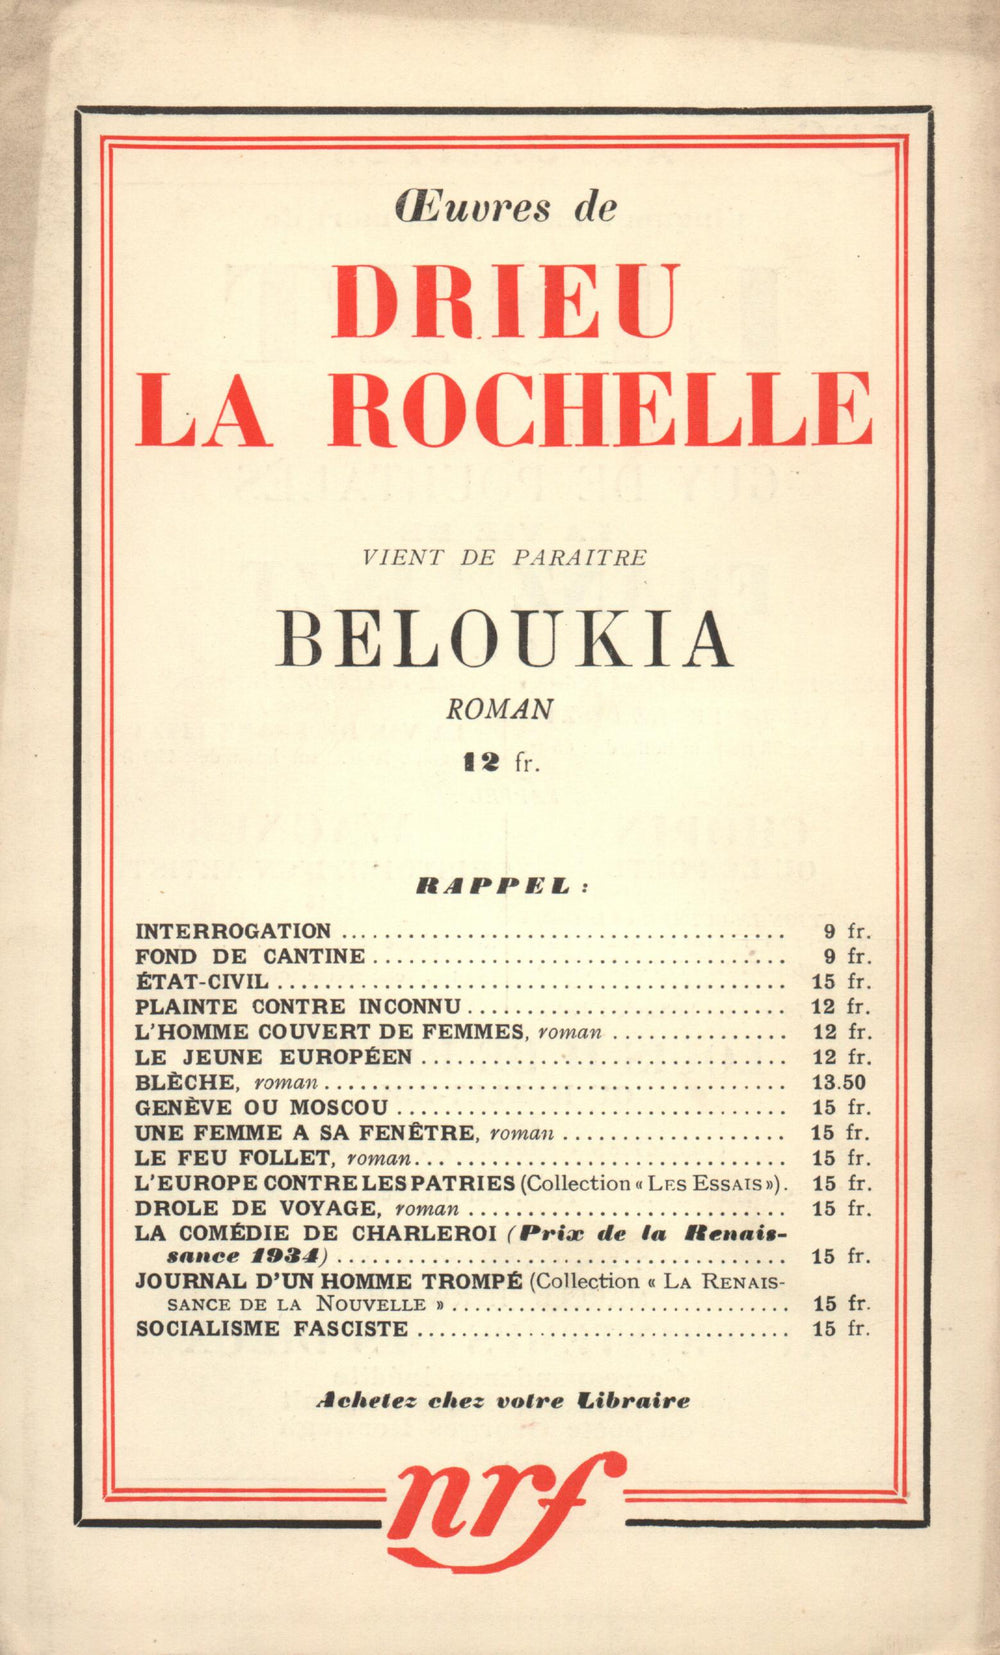 La Nouvelle Revue Française N° 275 (Aoűt 1936)